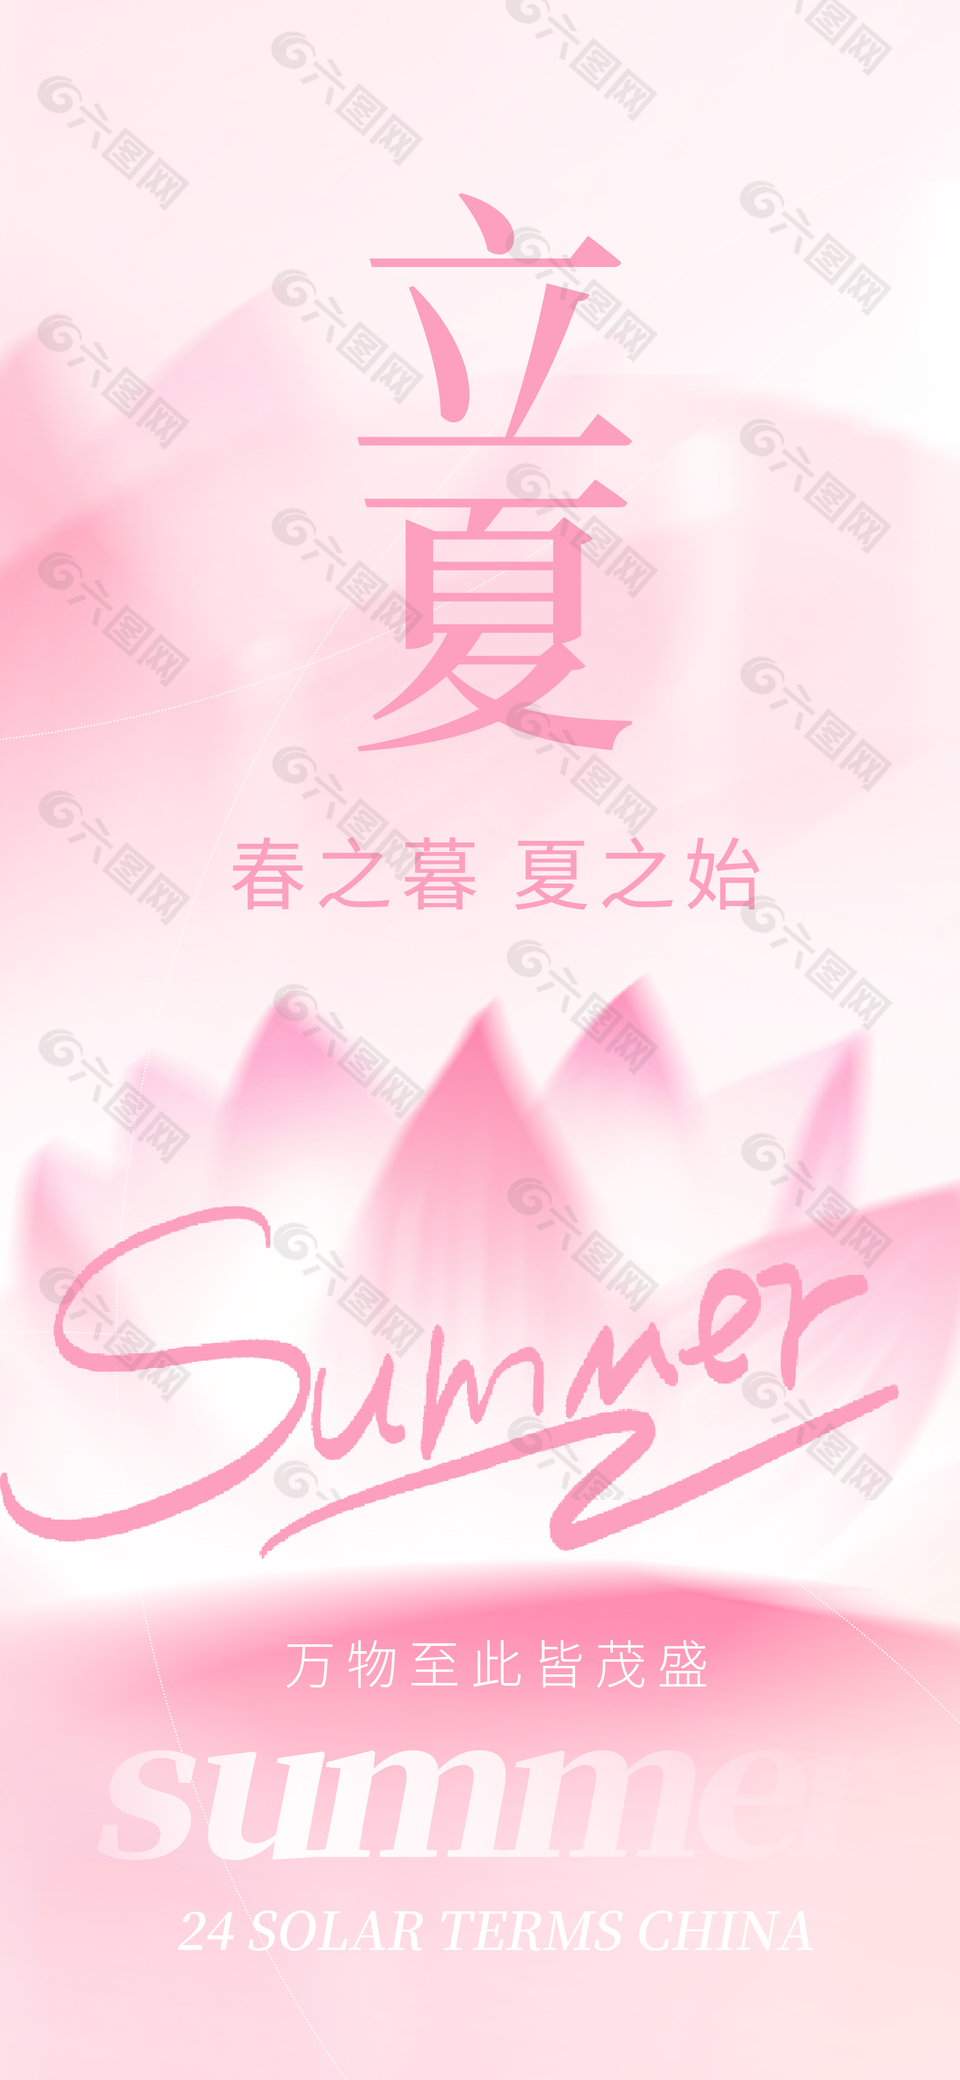 立夏创意粉色背景质感海报